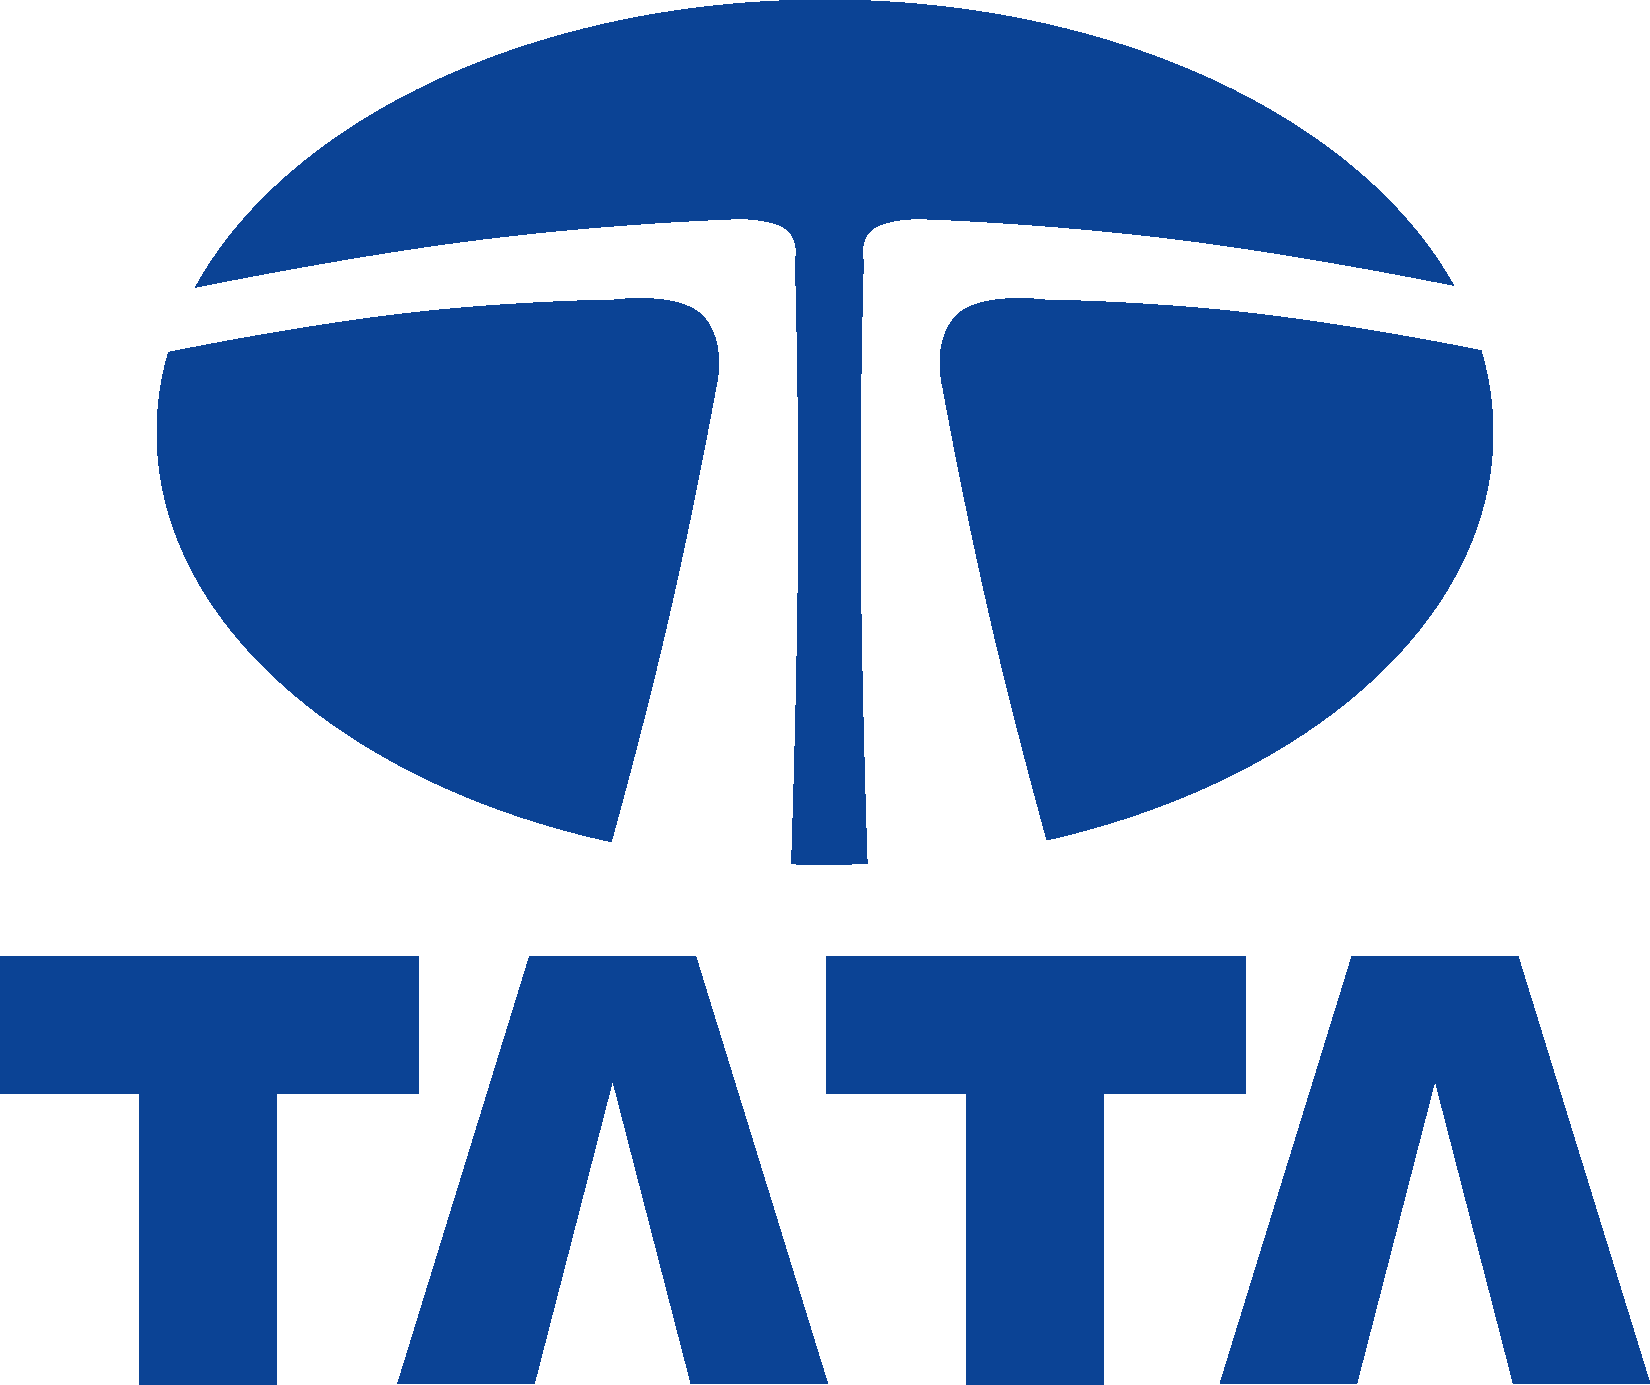 Tata Logo Png - Tata-logo-tra